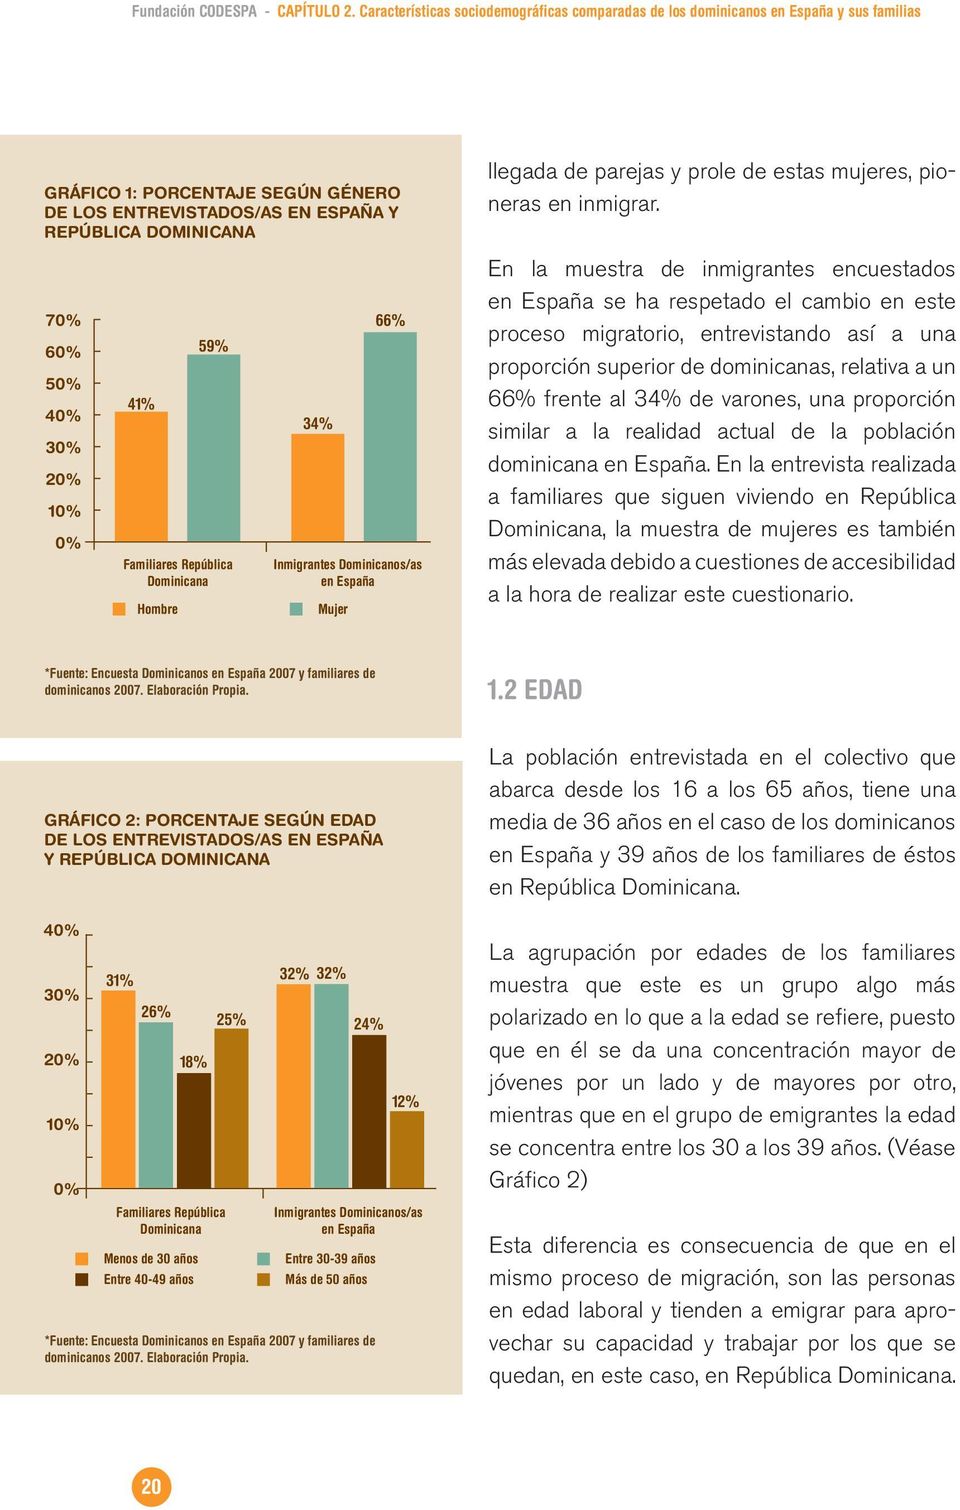 30% 20% 10% 0% 41% Familiares República Dominicana Hombre 59% 34% Mujer 66% Inmigrantes Dominicanos/as en España llegada de parejas y prole de estas mujeres, pioneras en inmigrar.